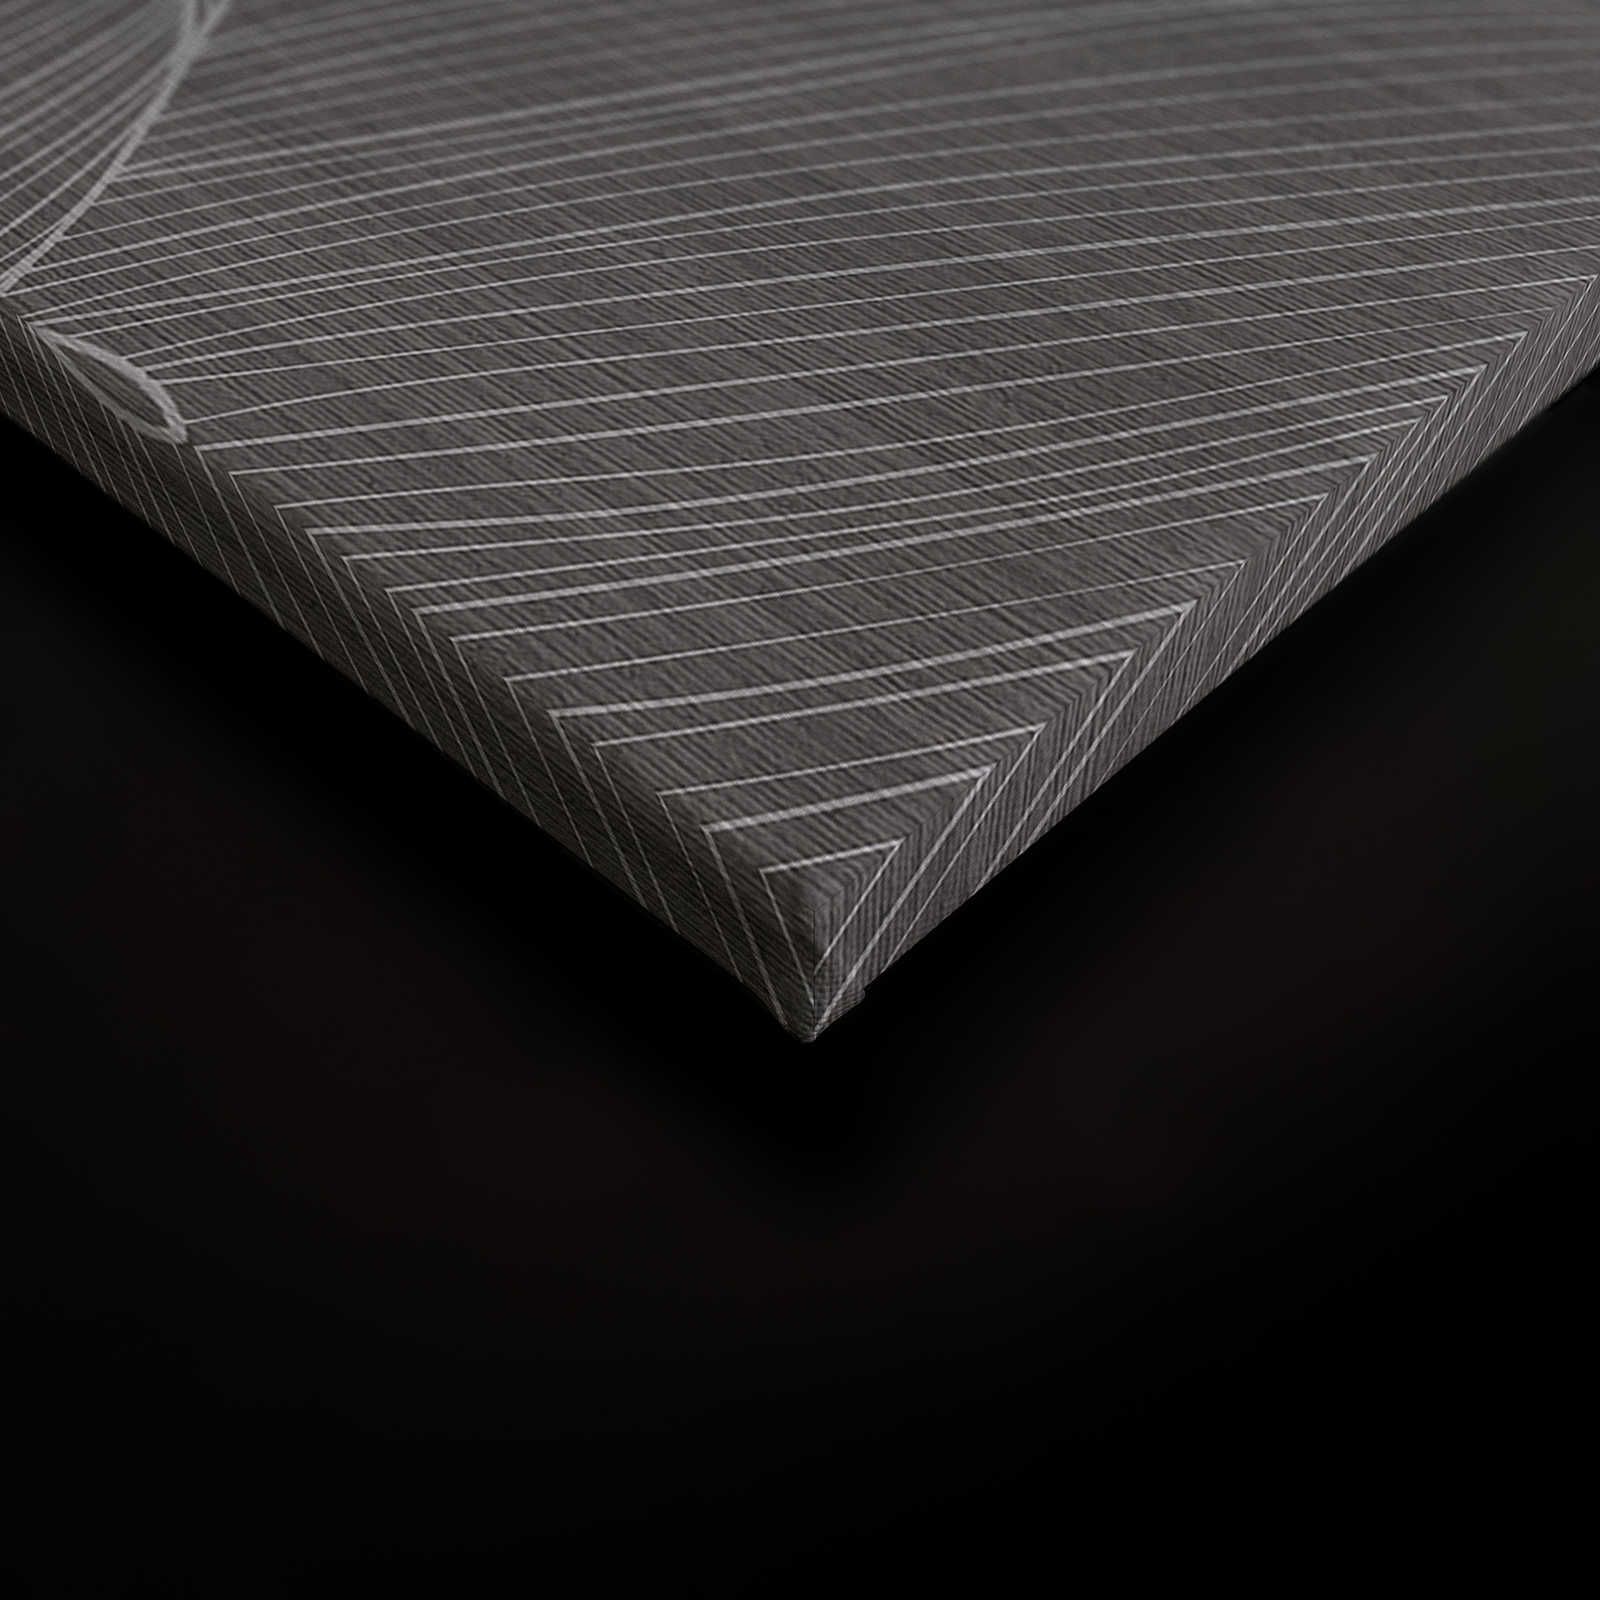             Secret Place 1 - Quadro su tela monocromatica Fiori, nero e grigio - 0,90 m x 0,60 m
        